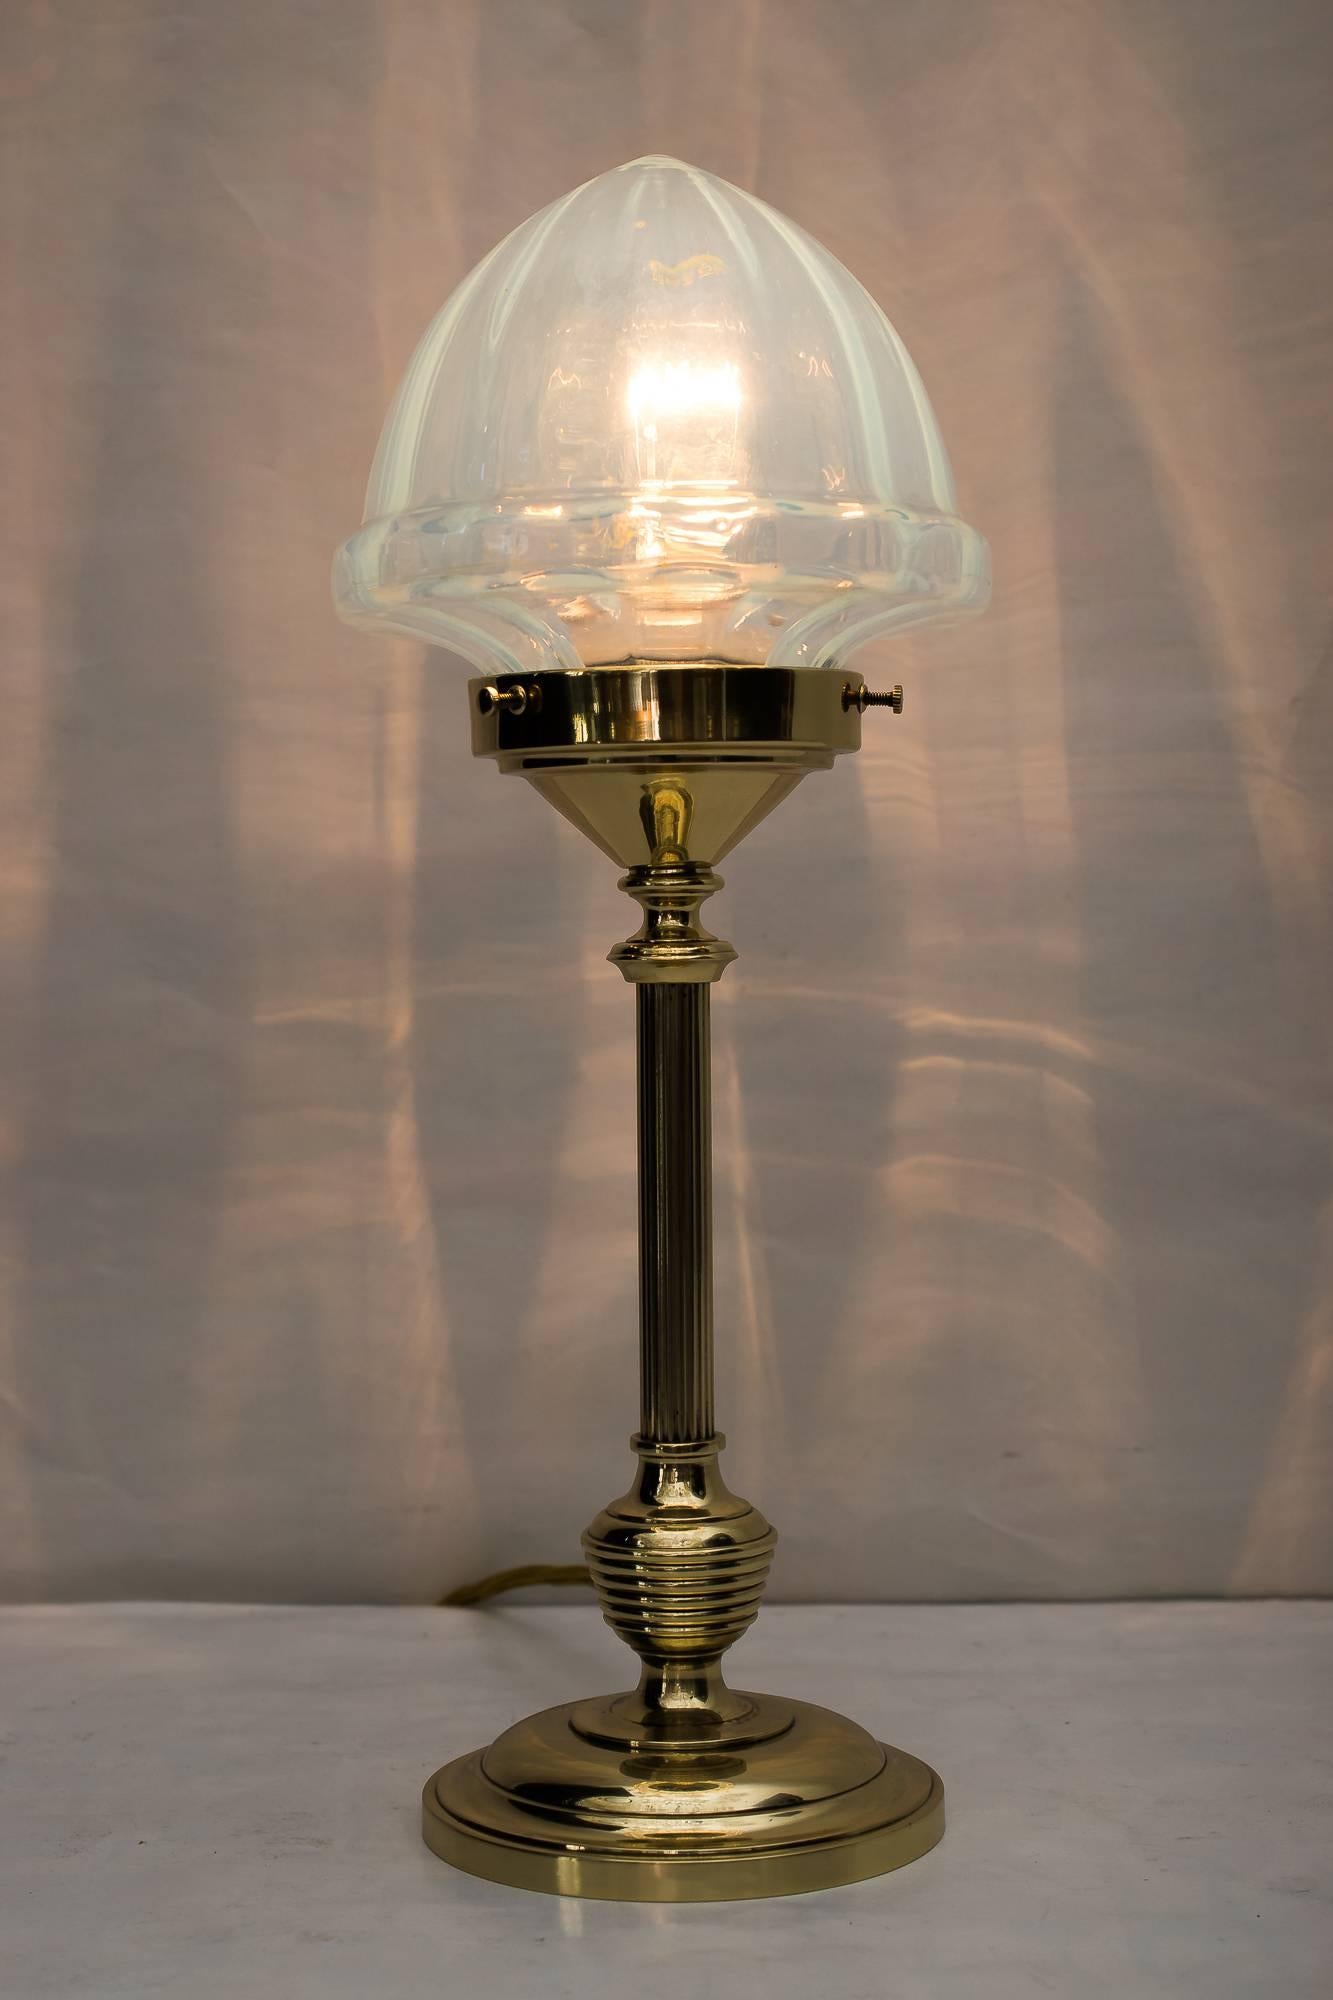 Art Deco Tischlampe mit Opalglasschirm
Poliert und einbrennlackiert.